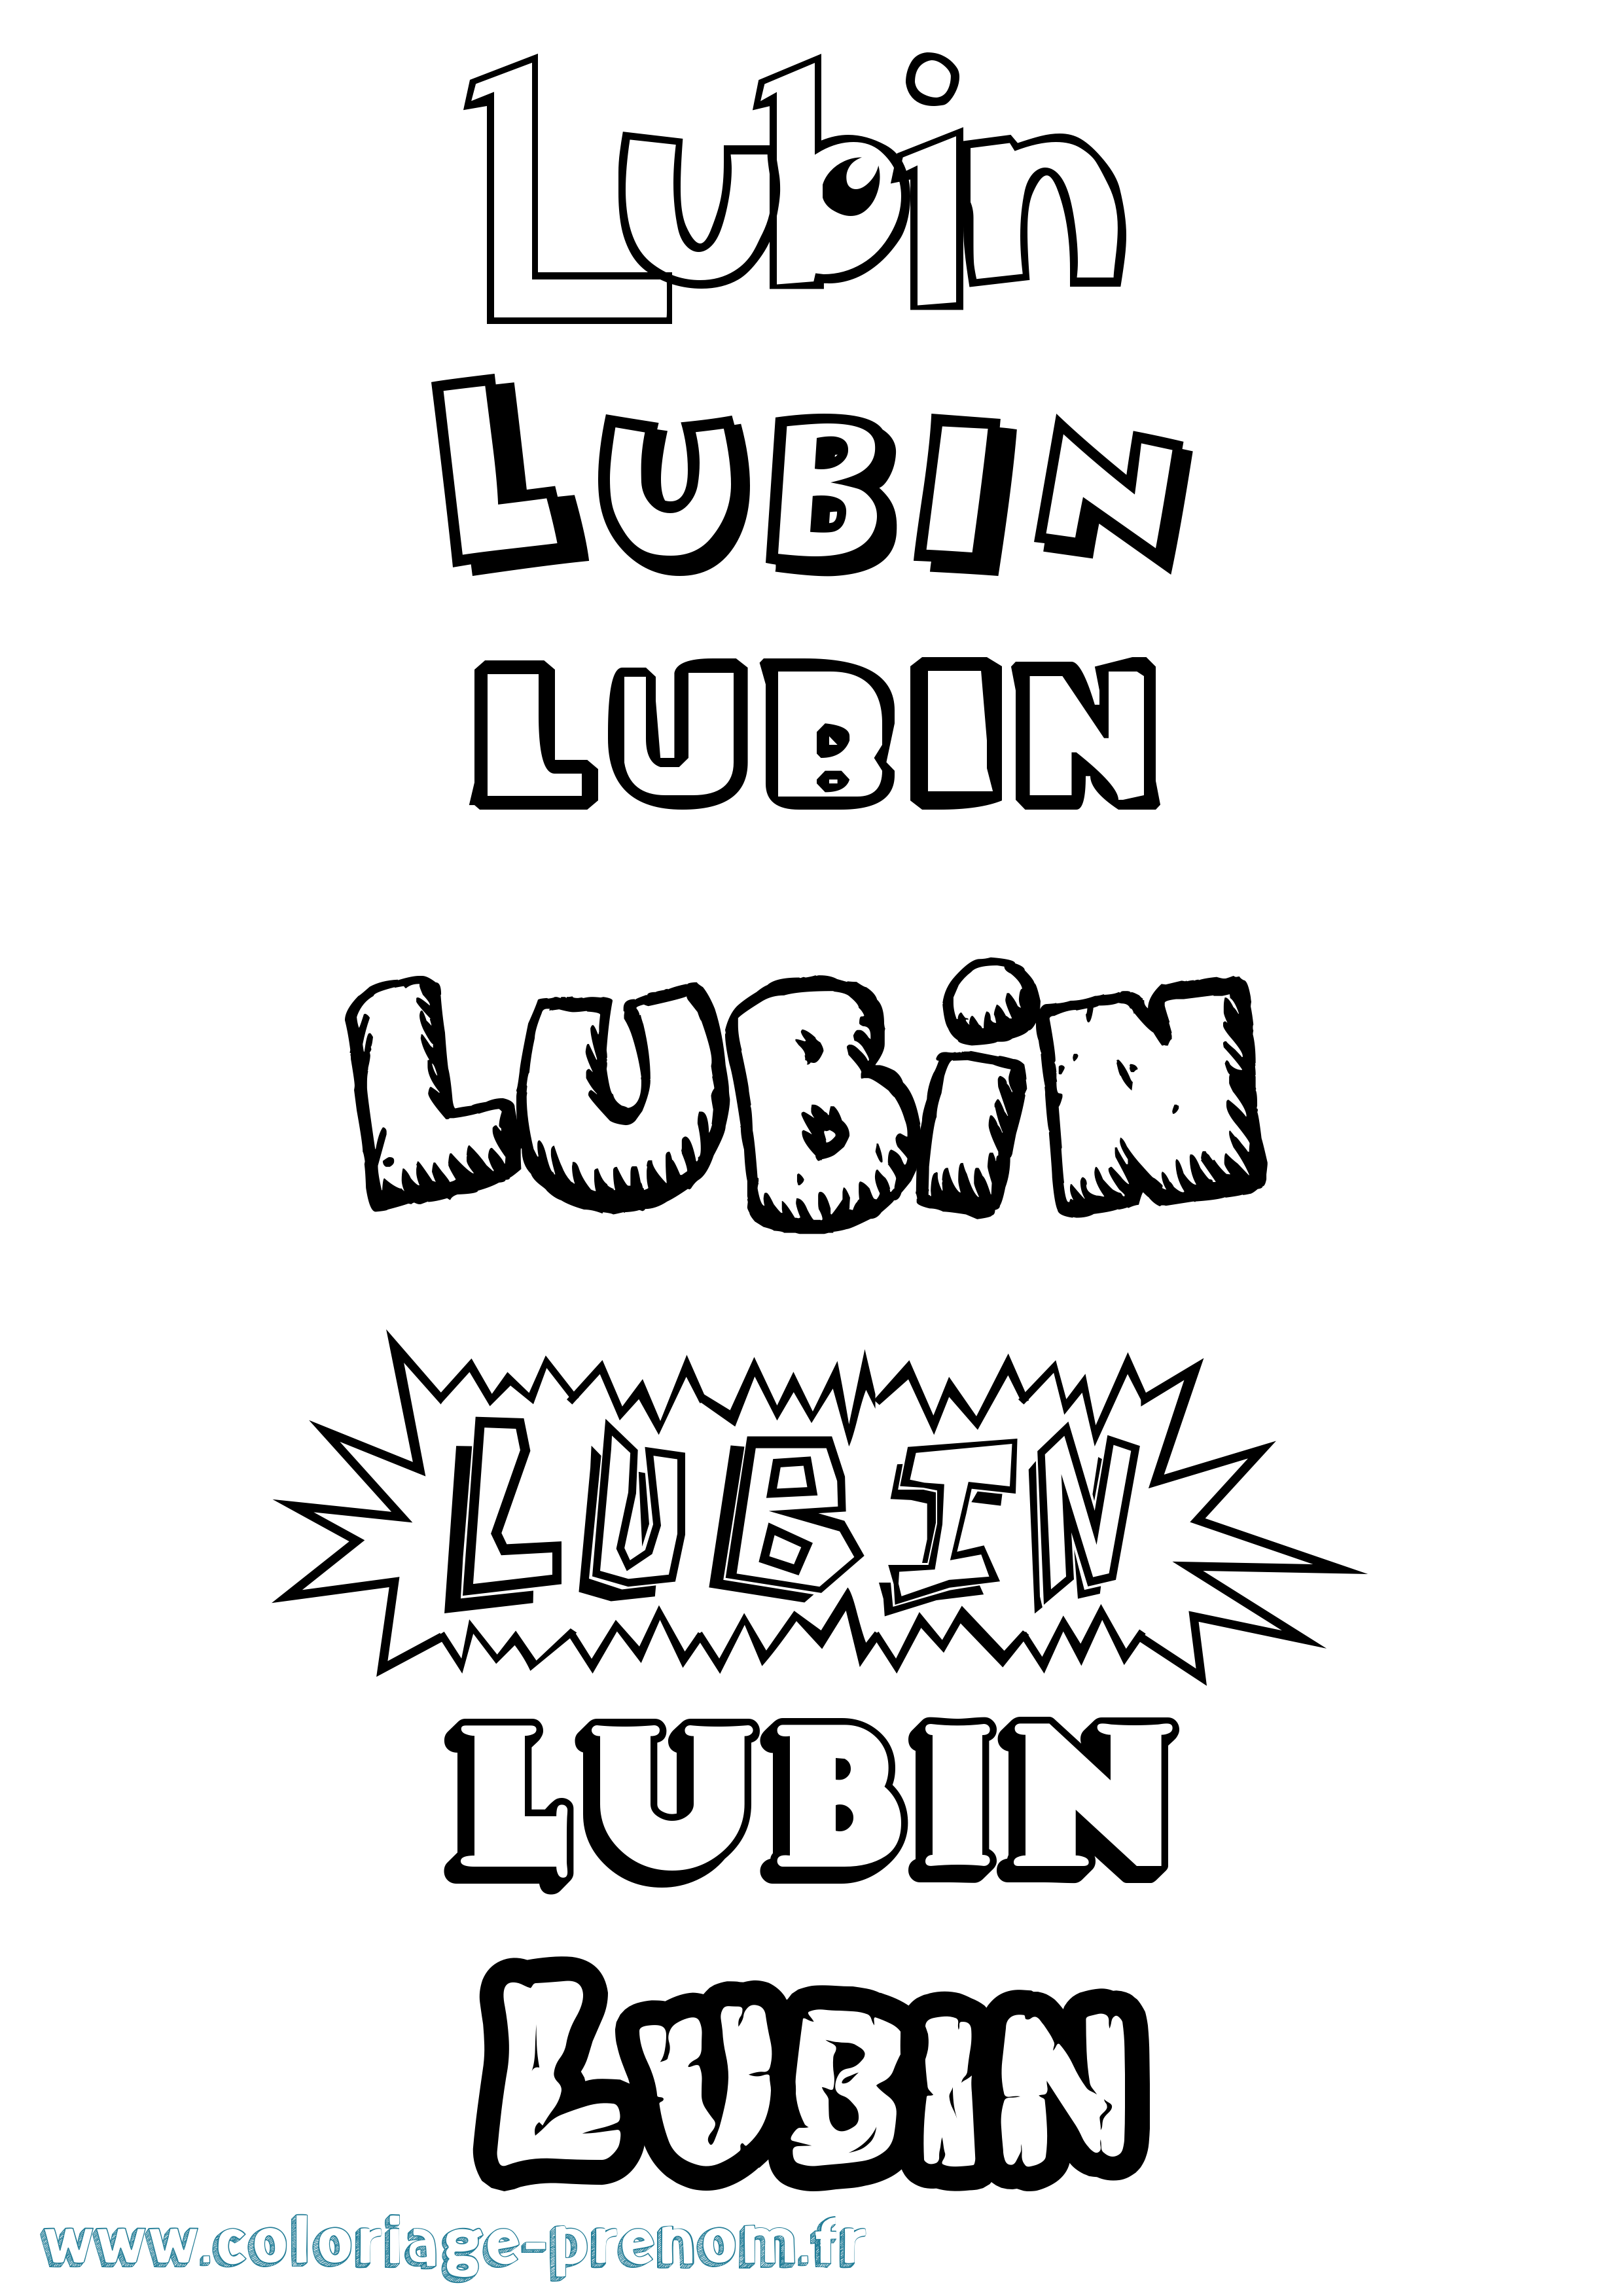 Coloriage prénom Lubin